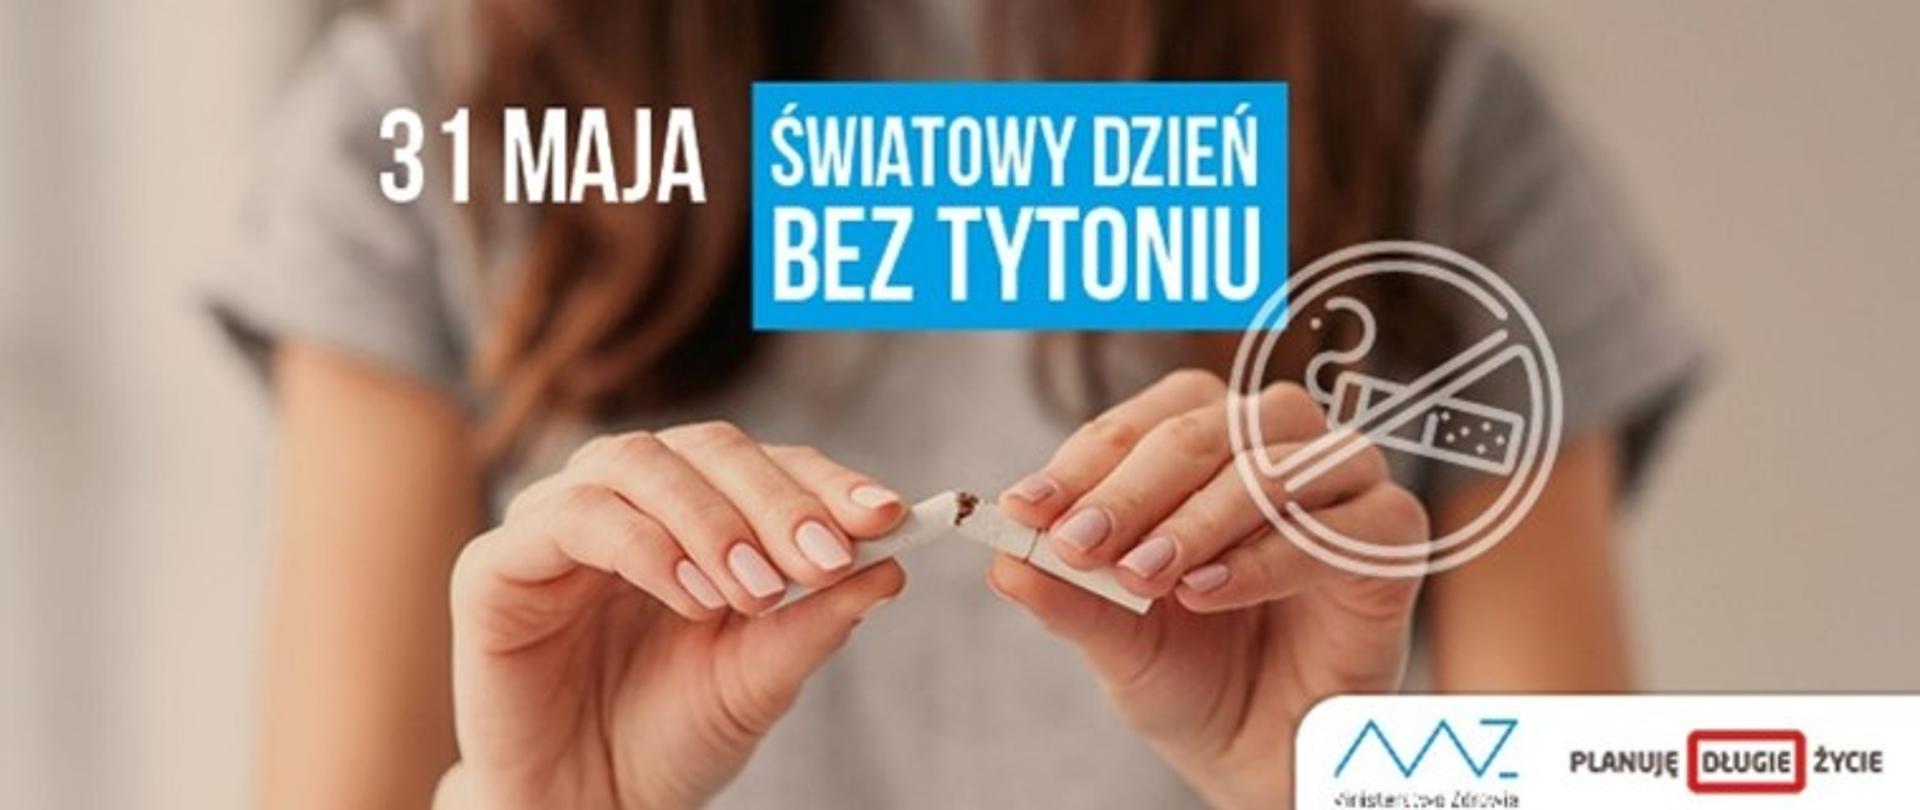 Światowy Dzień Bez Tytoniu – 31 maja